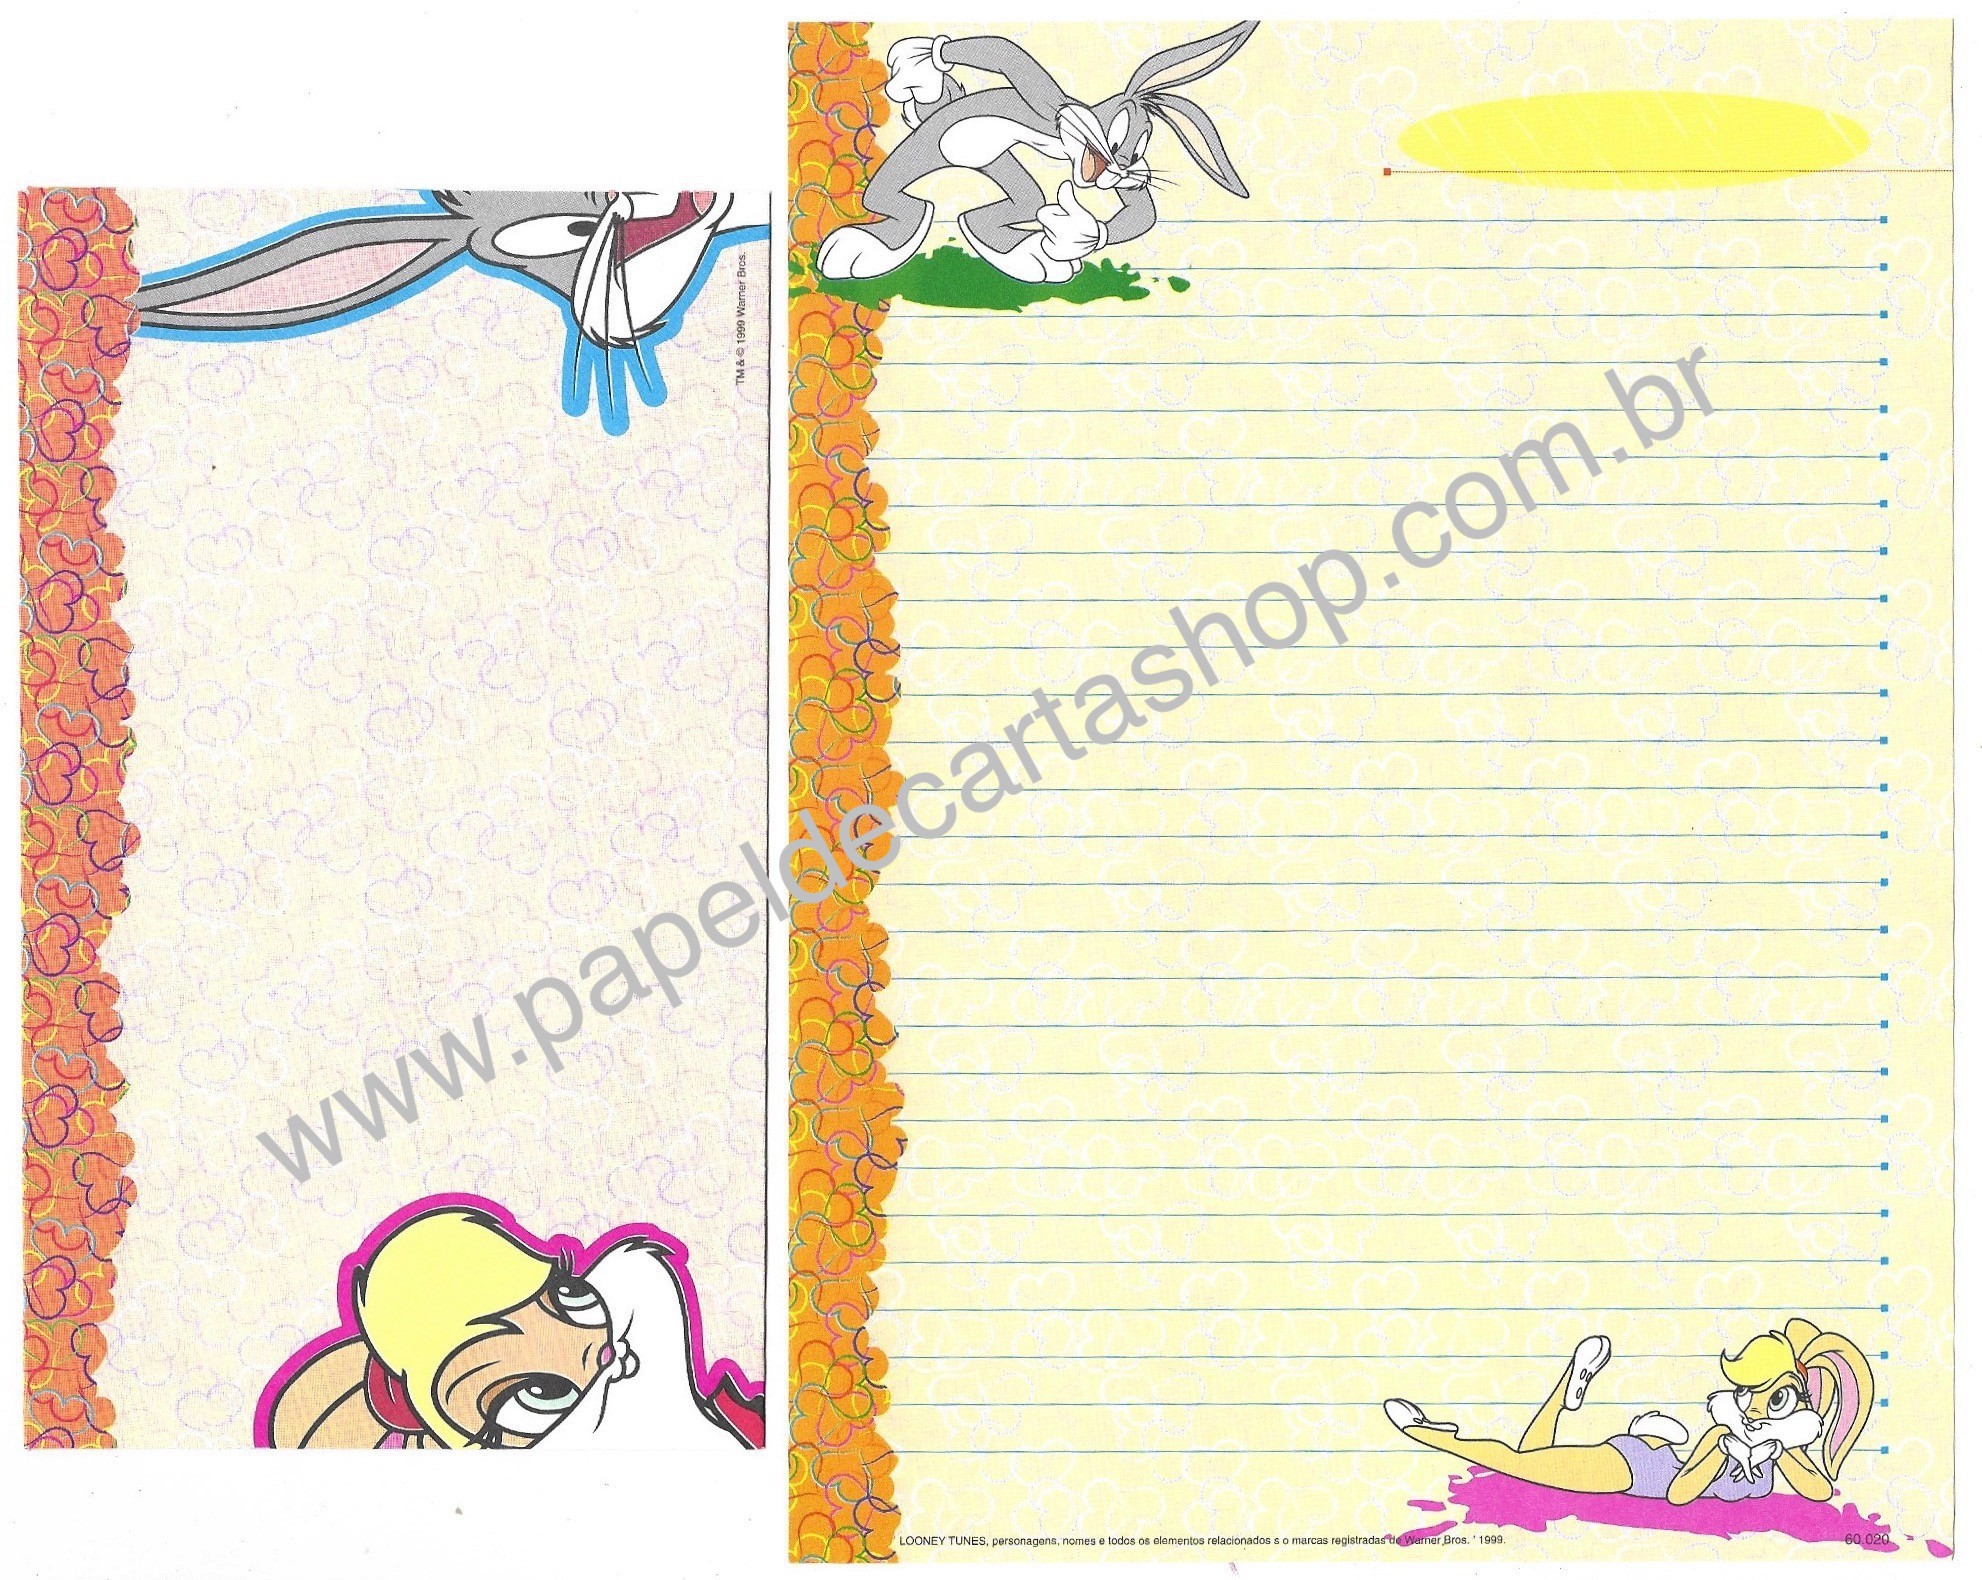 Conjunto de Papel de Carta Looney Tunes Personagens - Warner